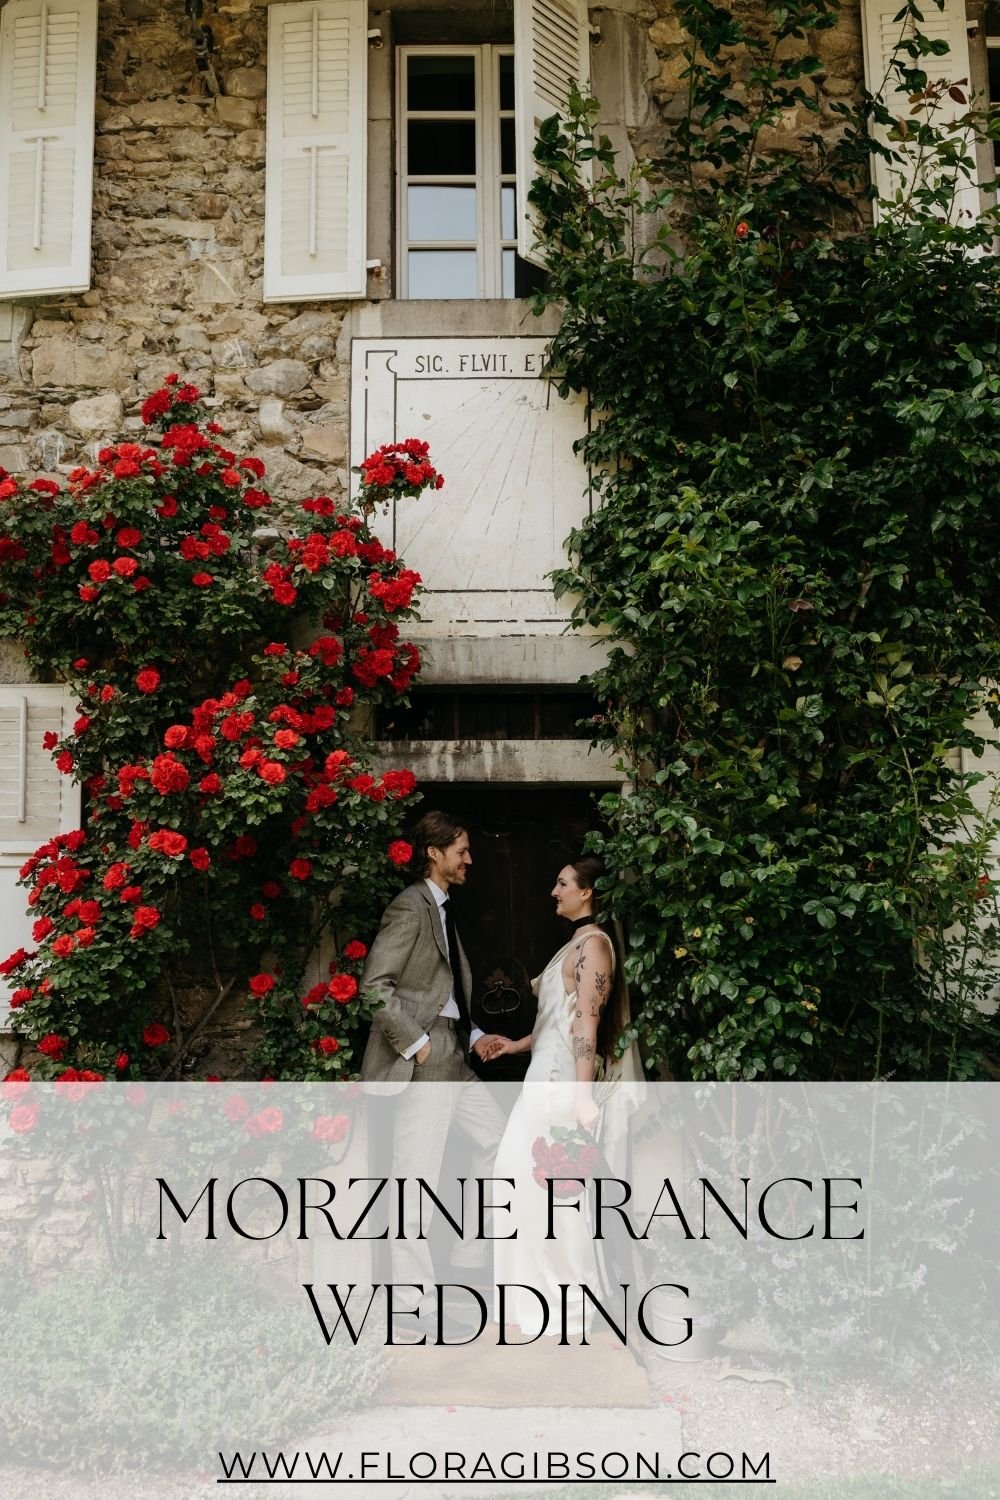 Morzine France Wedding.jpg